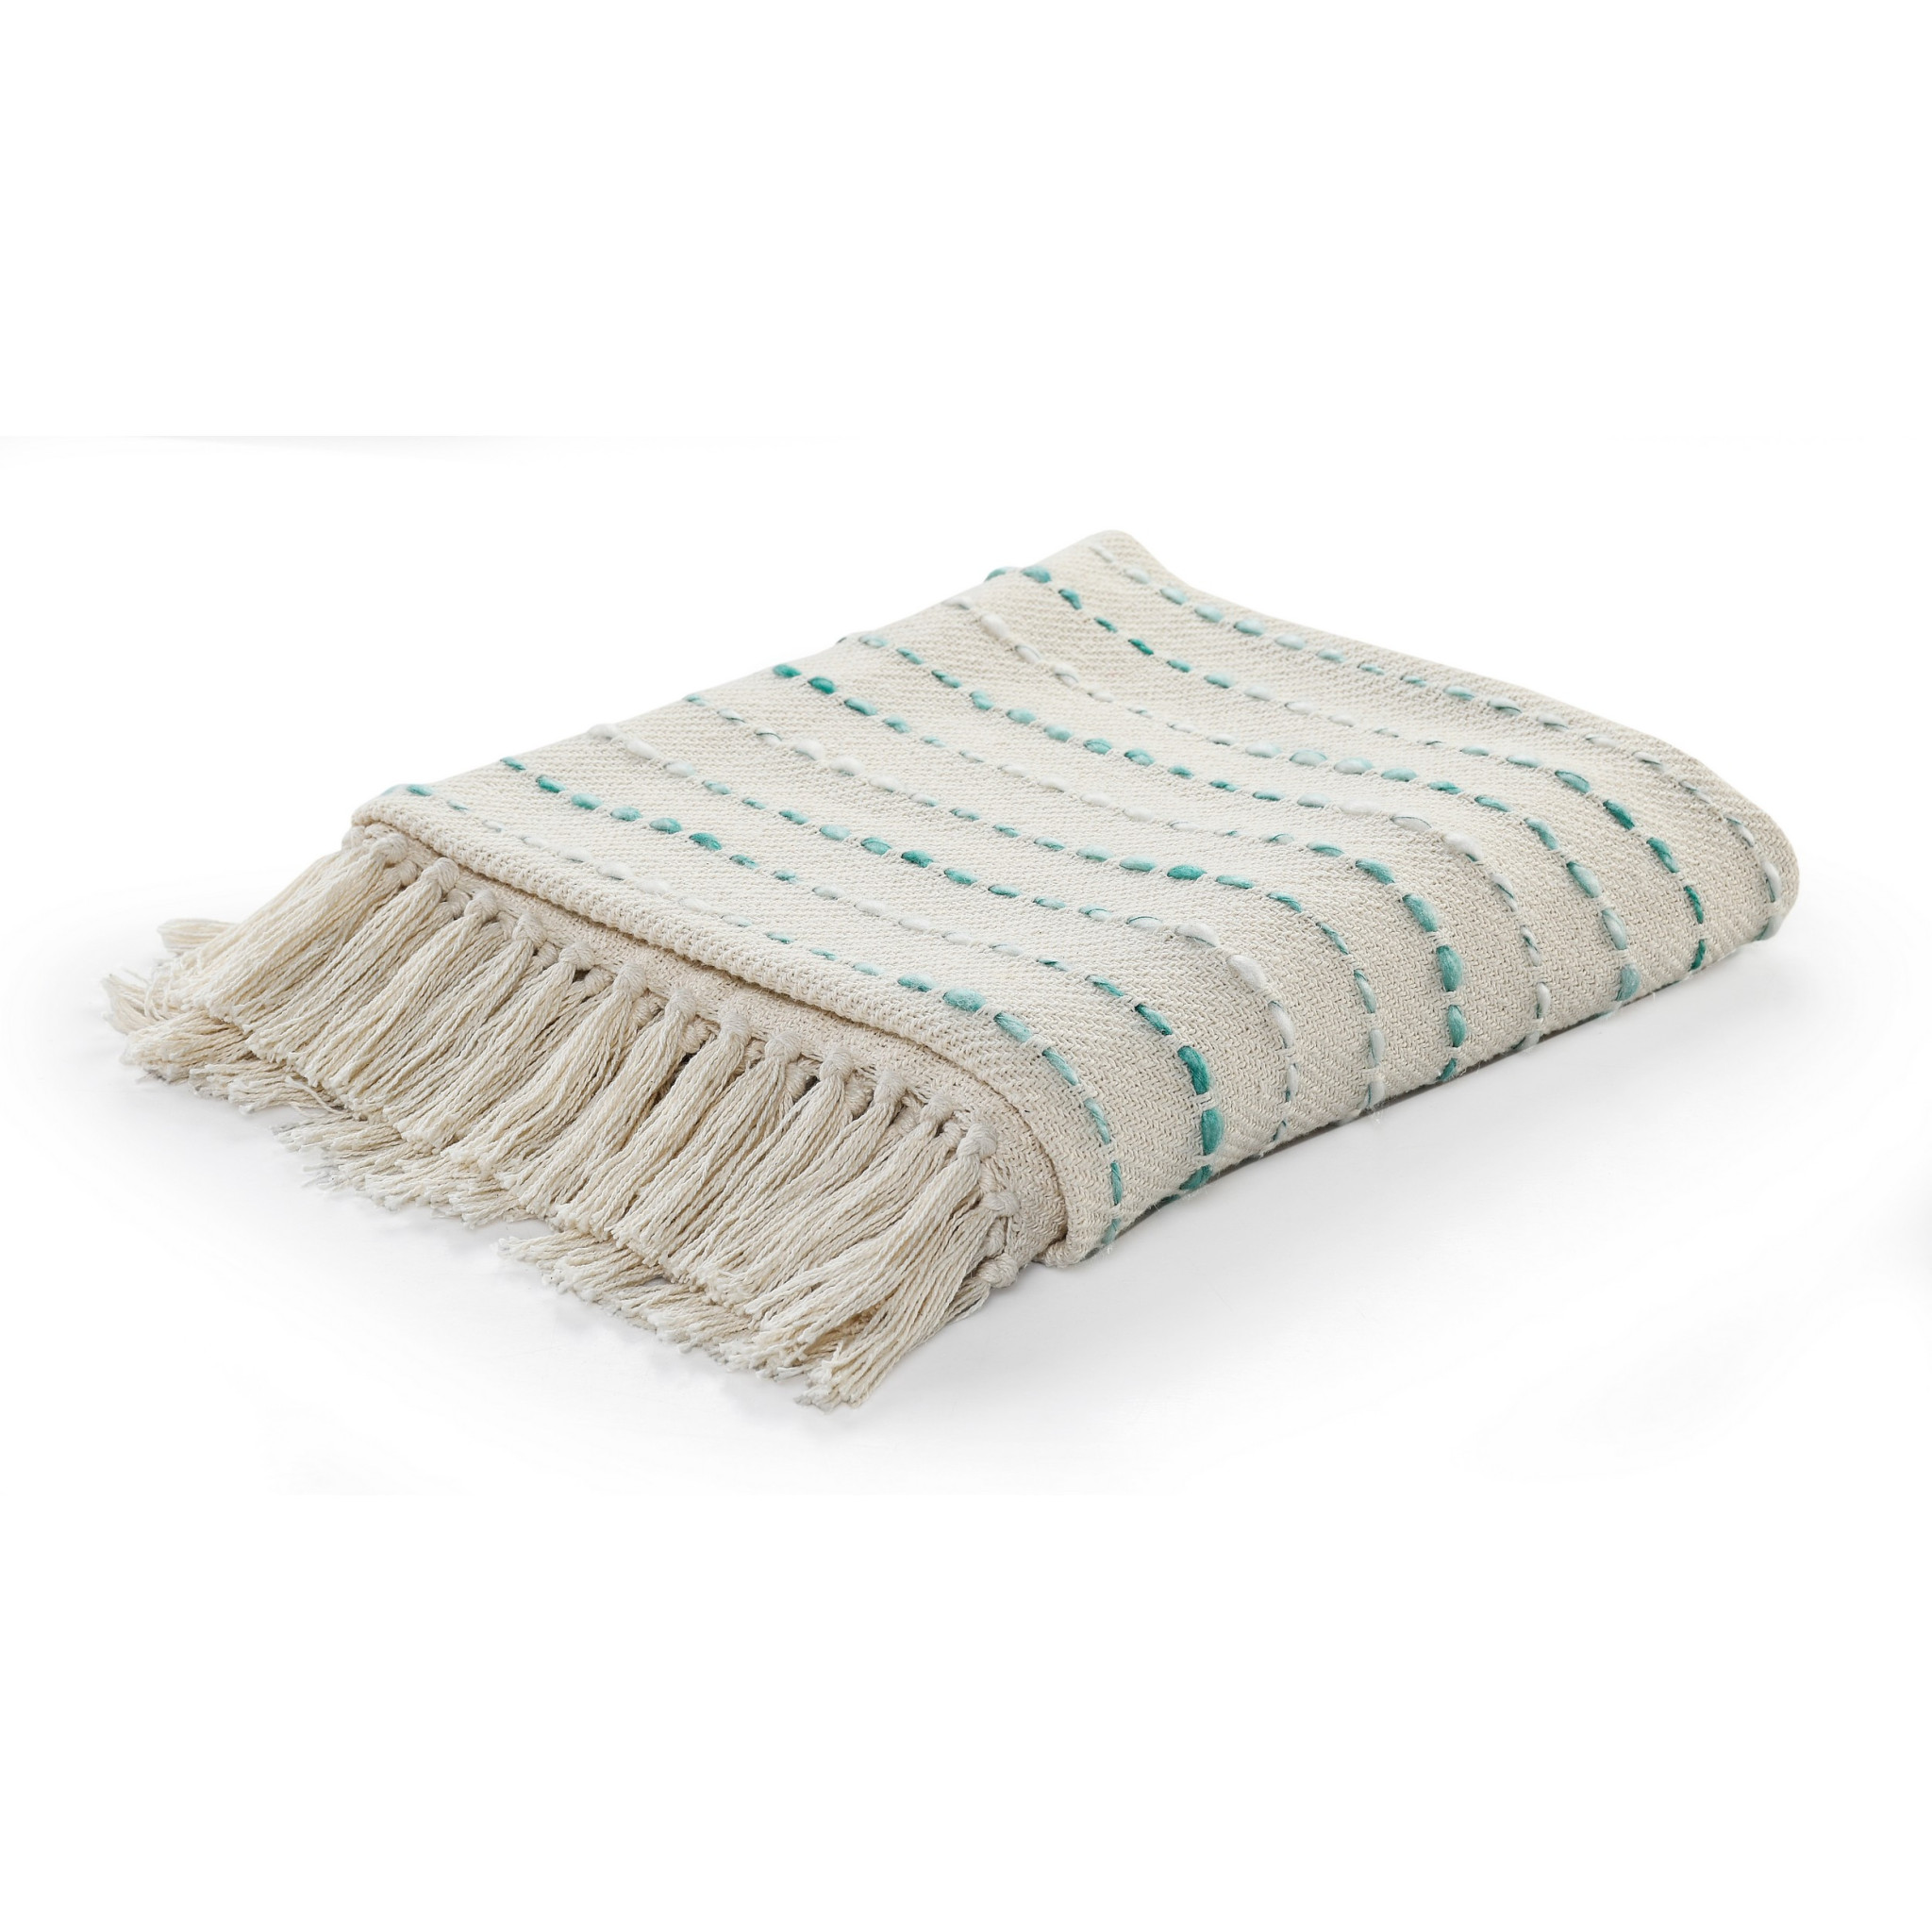 Cream Woven Cotton Striped Throw Blanket-516631-1